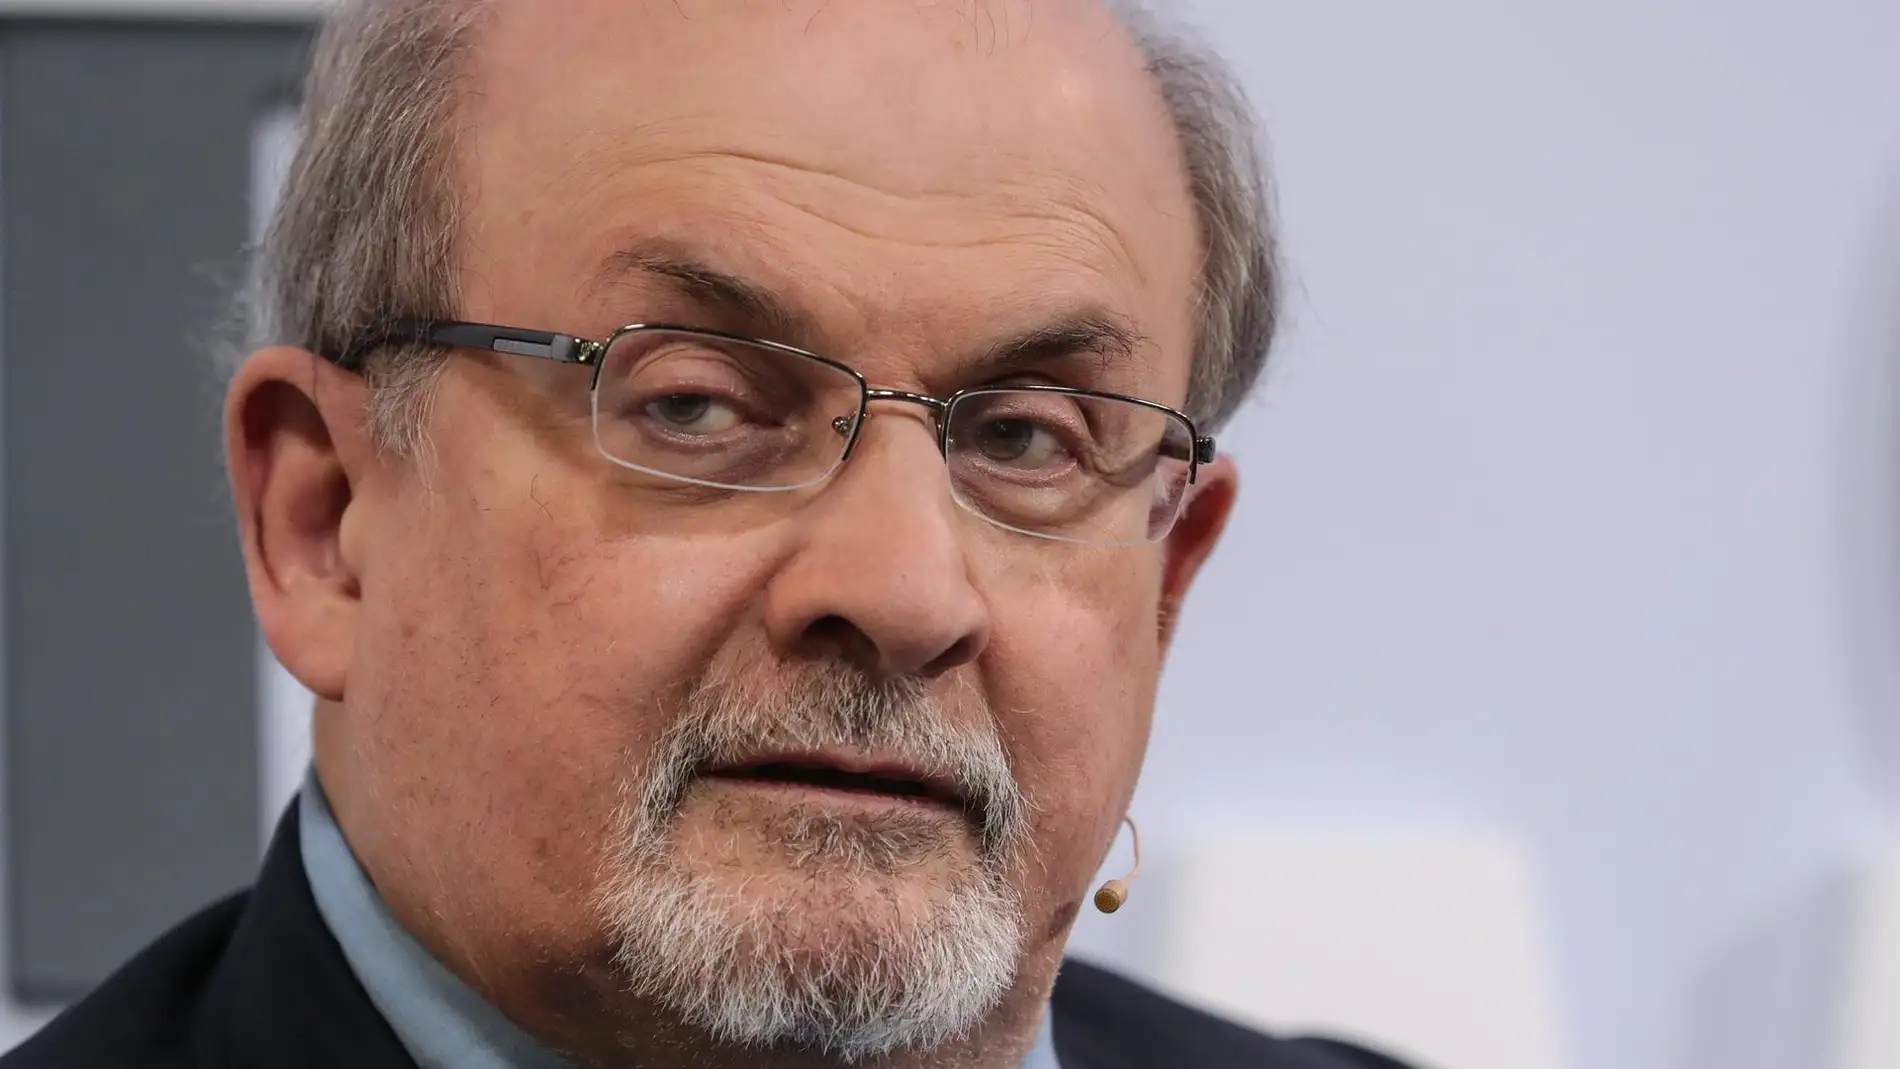 Tubería colgar Experto Hospitalizado el escritor Salman Rushdie después de ser apuñalado durante  una presentación en Nueva York | Onda Cero Radio